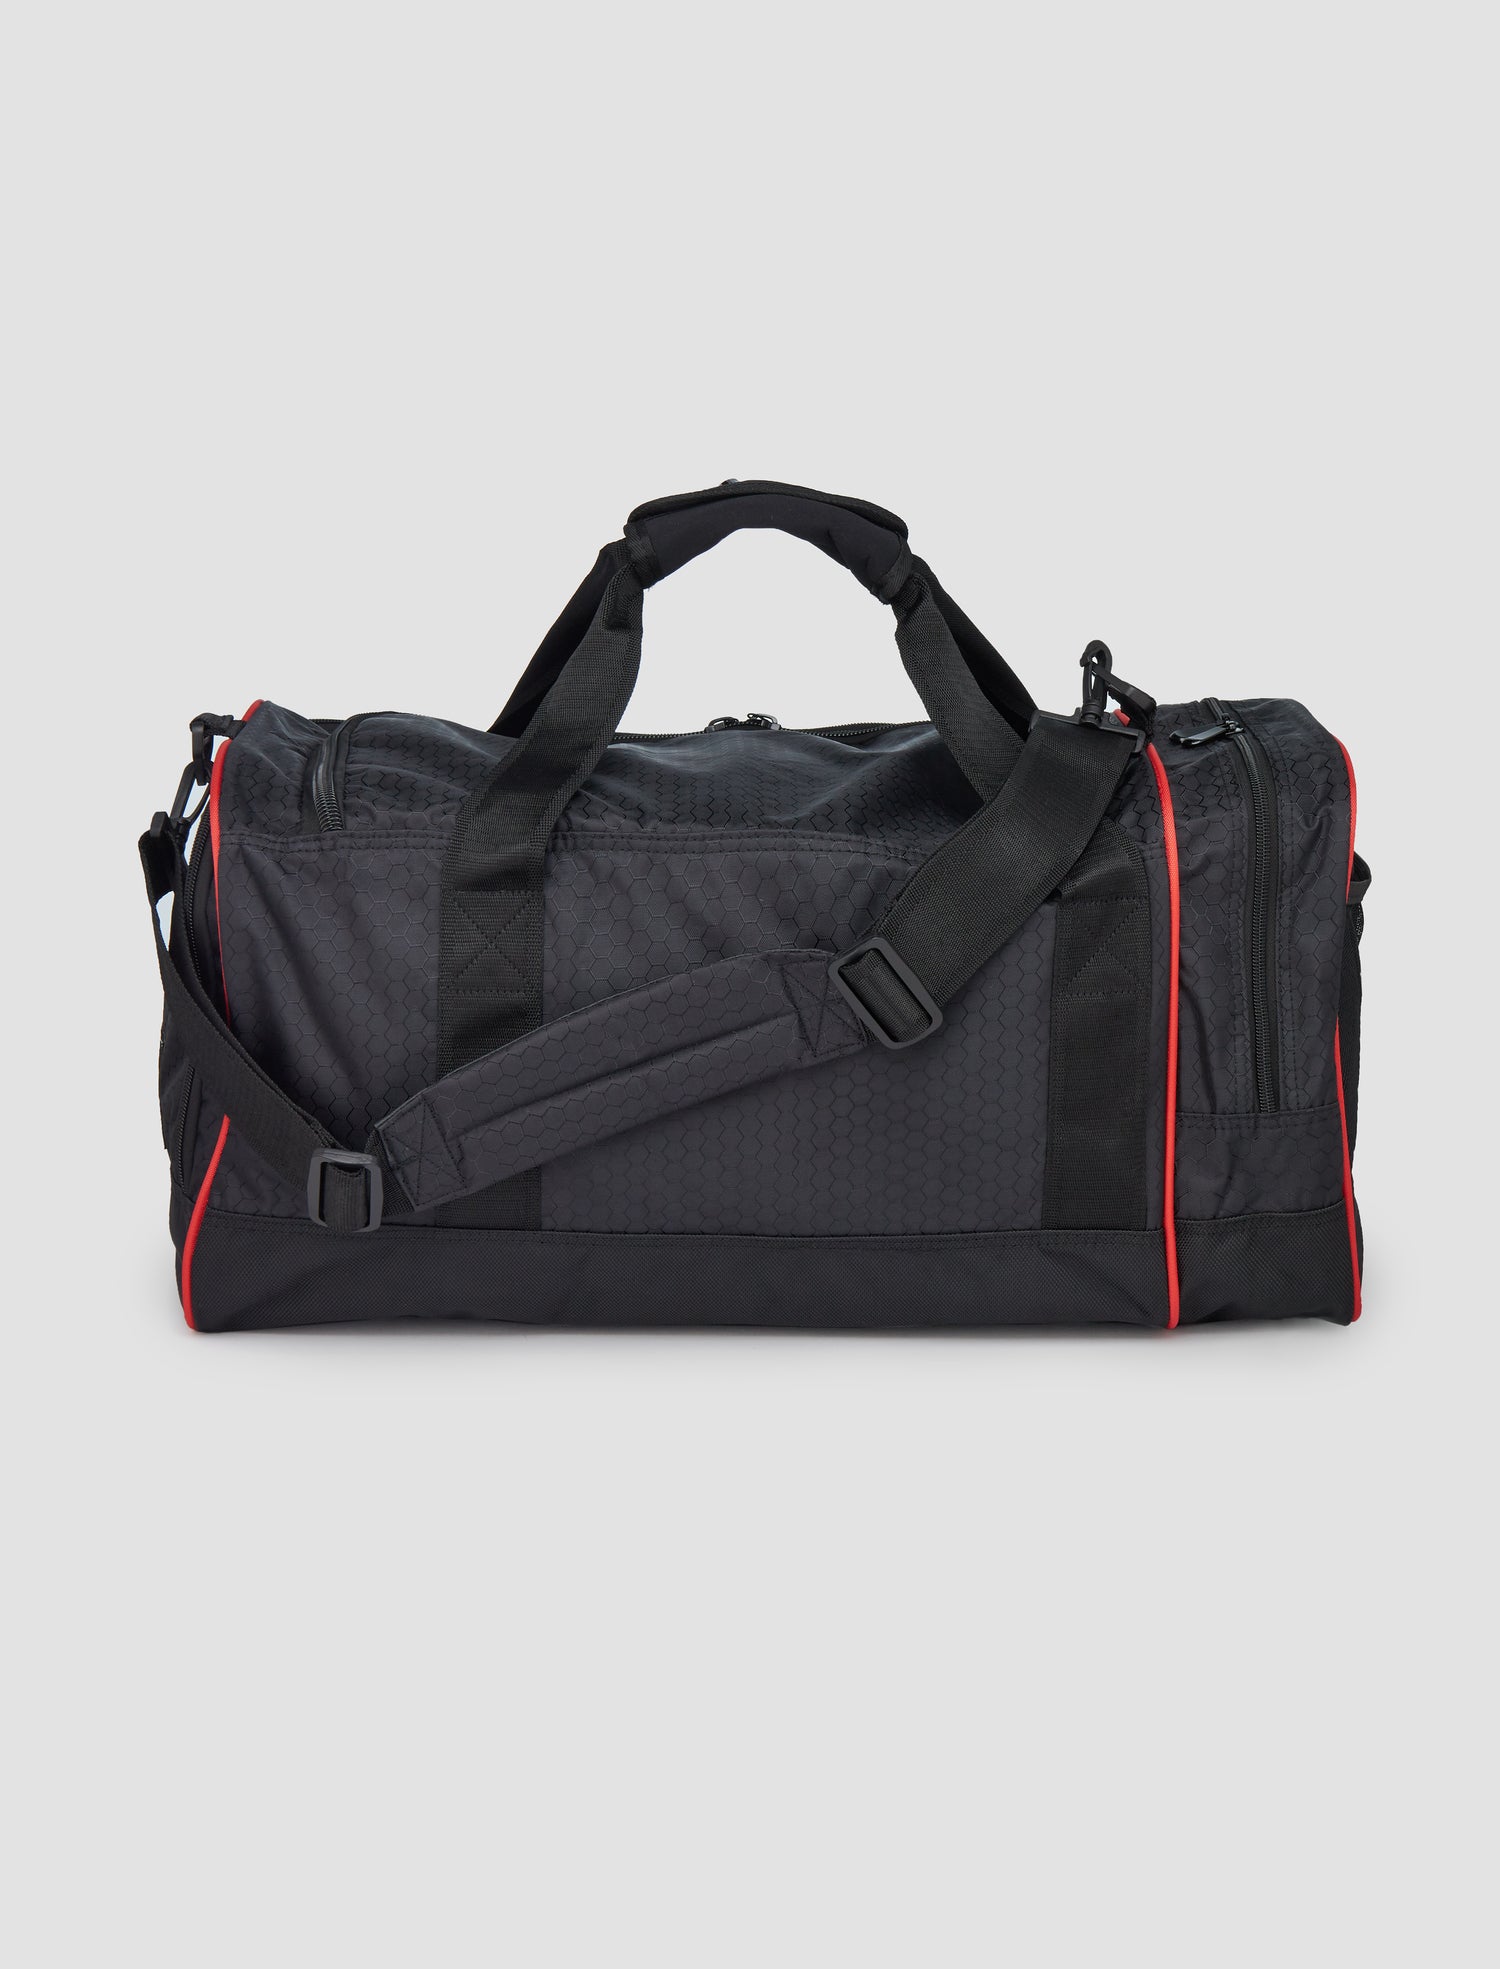 Pro Duffle Bag Black (Medium)